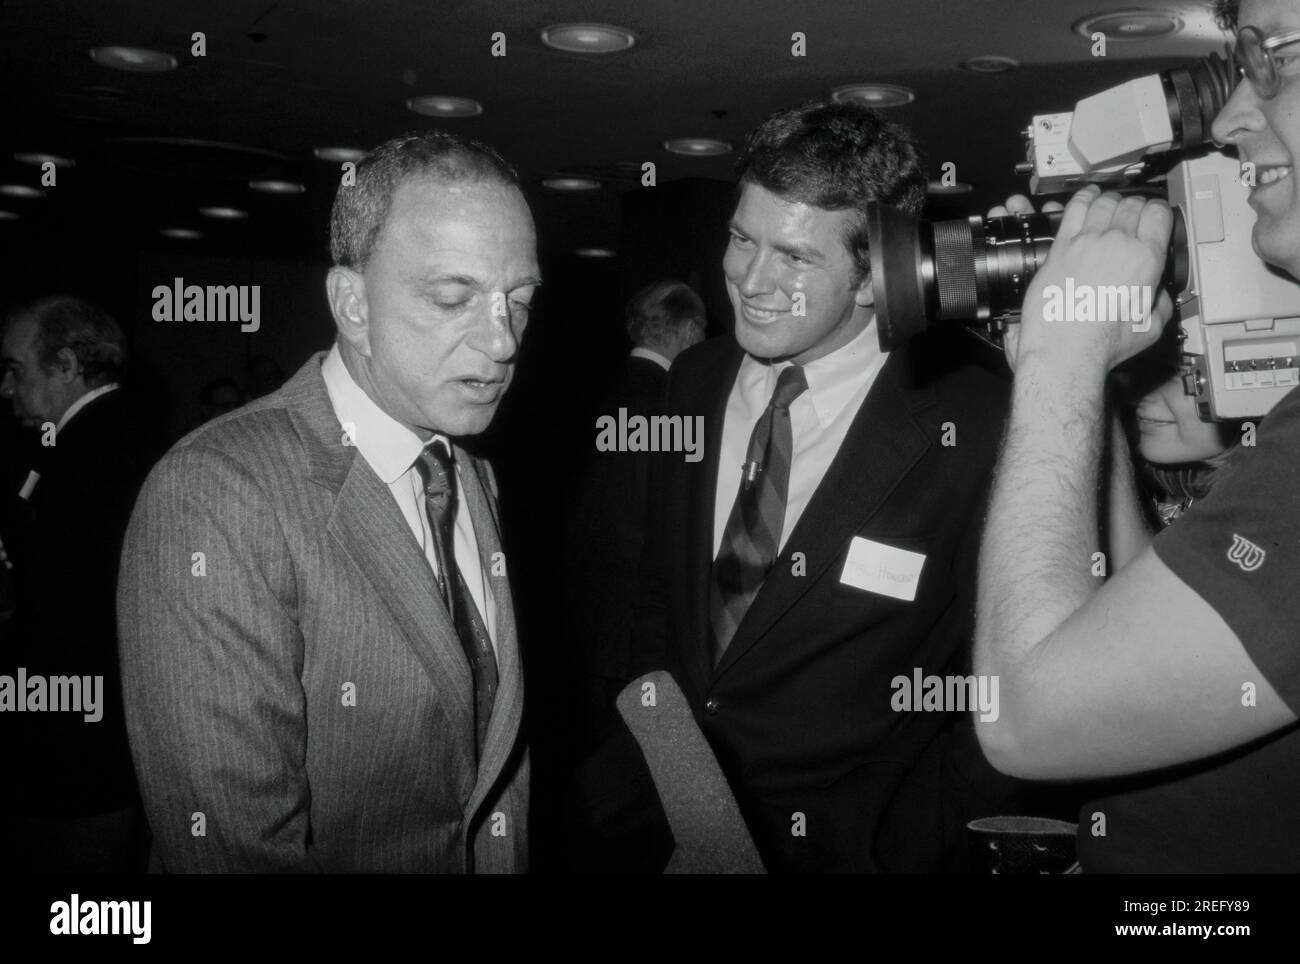 Roy Marcus Cohn (20 février 1927 - 2 août 1986) était un avocat et procureur américain qui s'est fait connaître pour son rôle de conseiller en chef du sénateur Joseph McCarthy lors des audiences Army-McCarthy en 1954, lorsqu'il a aidé McCarthy à enquêter sur les communistes présumés. À la fin des années 1970 et au cours des années 1980, il est devenu un fixateur politique de premier plan à New York. Il a également représenté et encadré le promoteur immobilier de la ville de New York et future U.S. Président Donald Trump au début de sa carrière d'affaires. Photographie de Bernard Gotfryd Banque D'Images